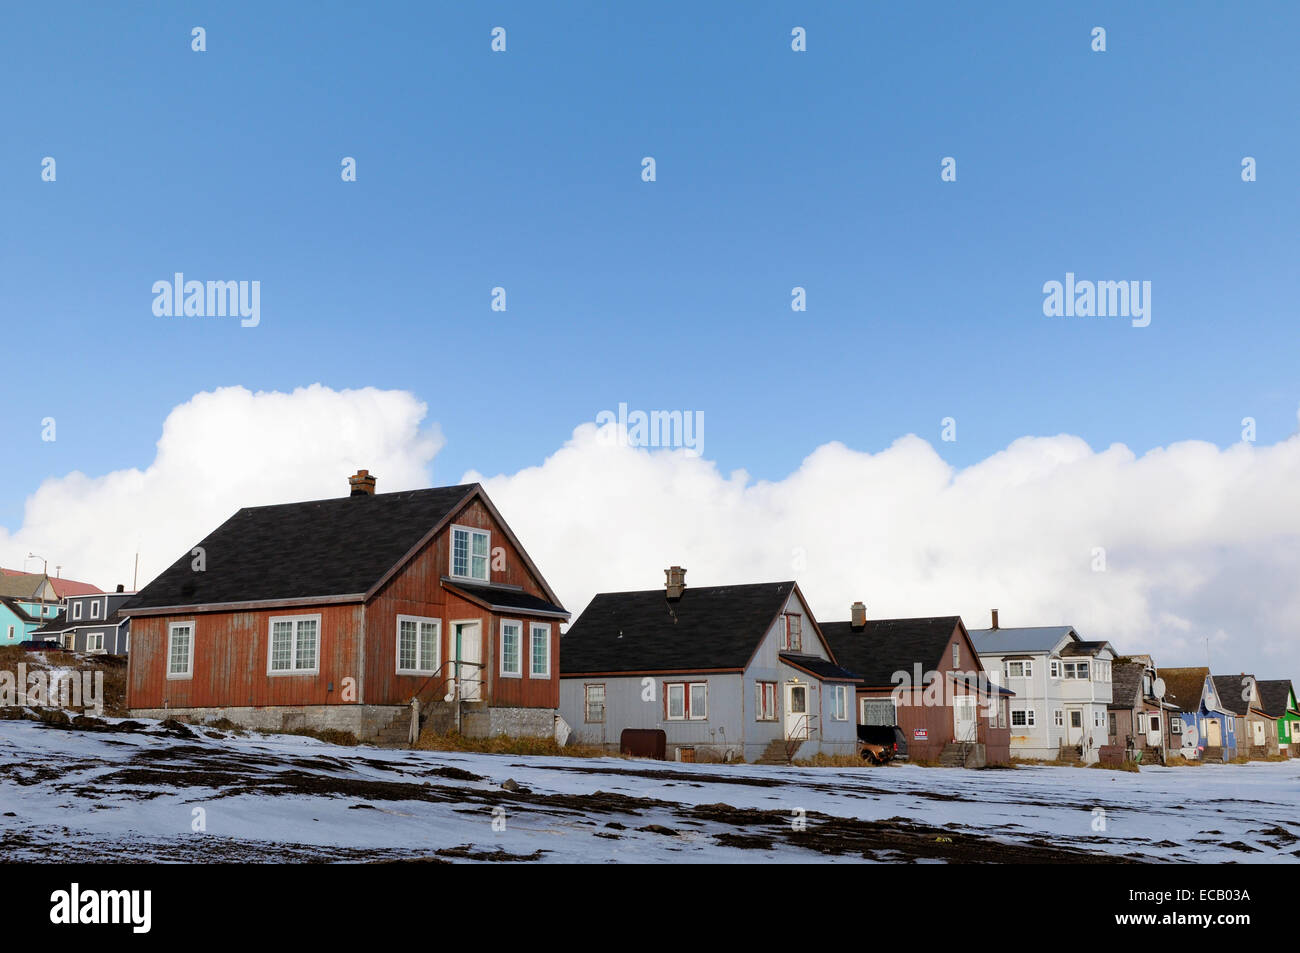 Maisons dans le village de la mer de roulement à distance l'île Saint-Paul, l'Alaska. Environ 500 personnes vivent dans le plus grand village de l'Alaska Native Aléoutes sur l'île 775 milles à l'ouest d'Anchorage dans la mer de Béring. Banque D'Images